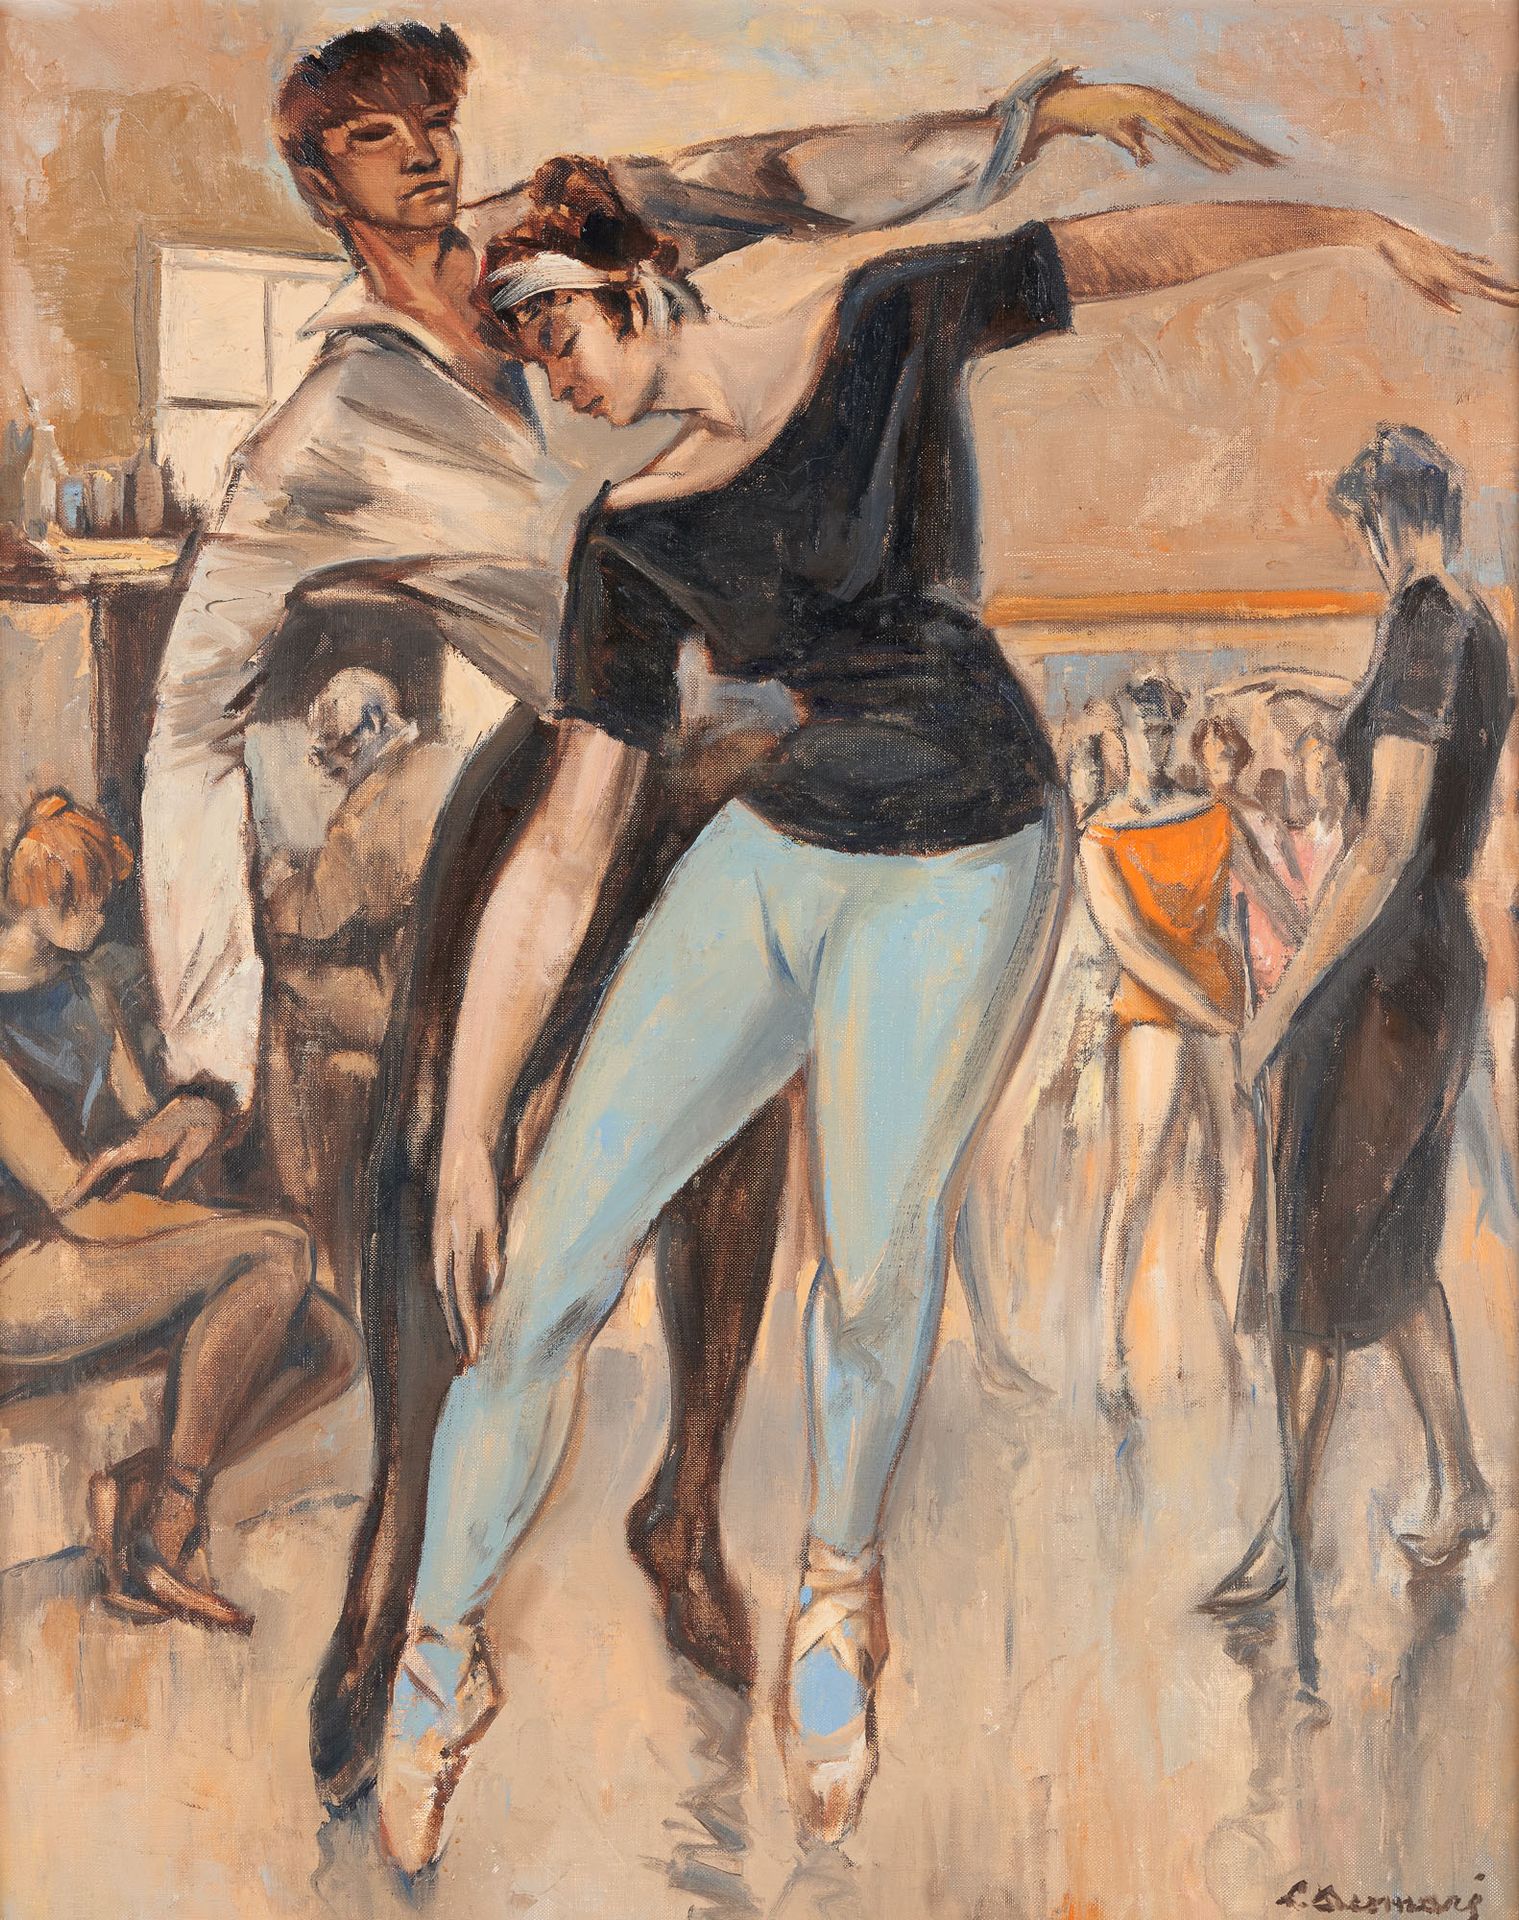 Lucien DESMARÉ École belge (1905-1961) Óleo sobre lienzo: La clase de baile.

Fi&hellip;